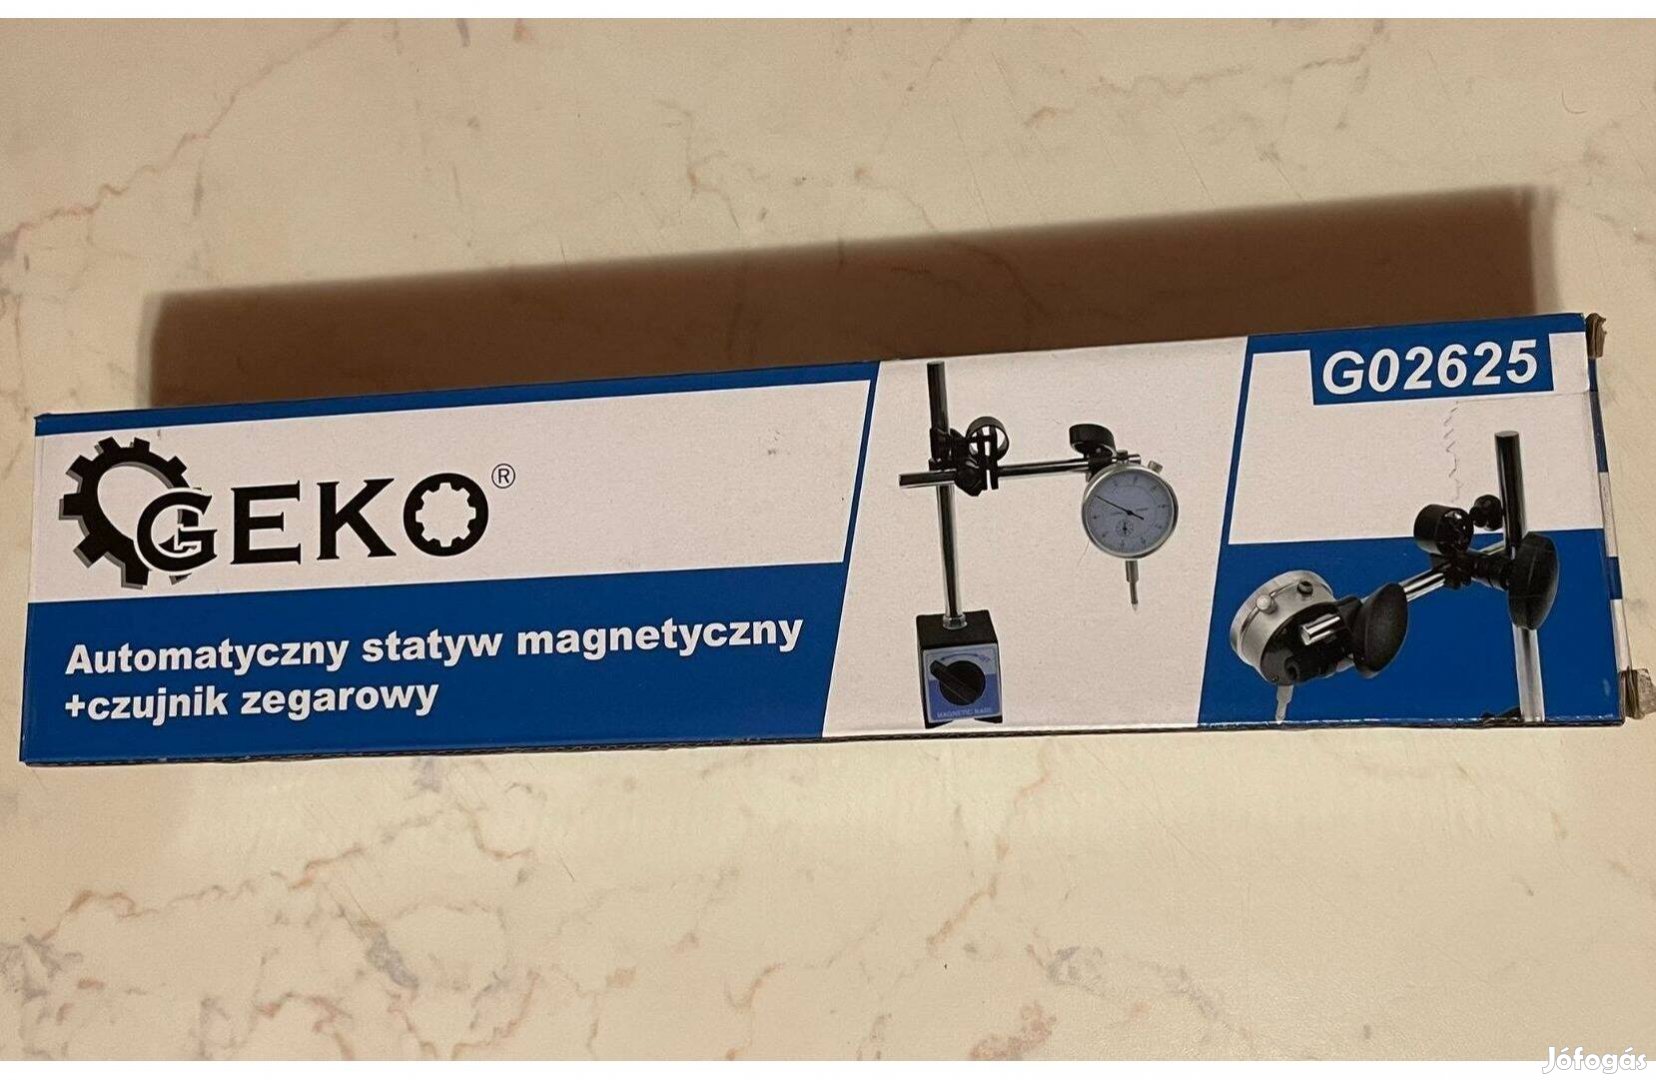 Geko G02625 mágneses talpú analóg mélységmérő